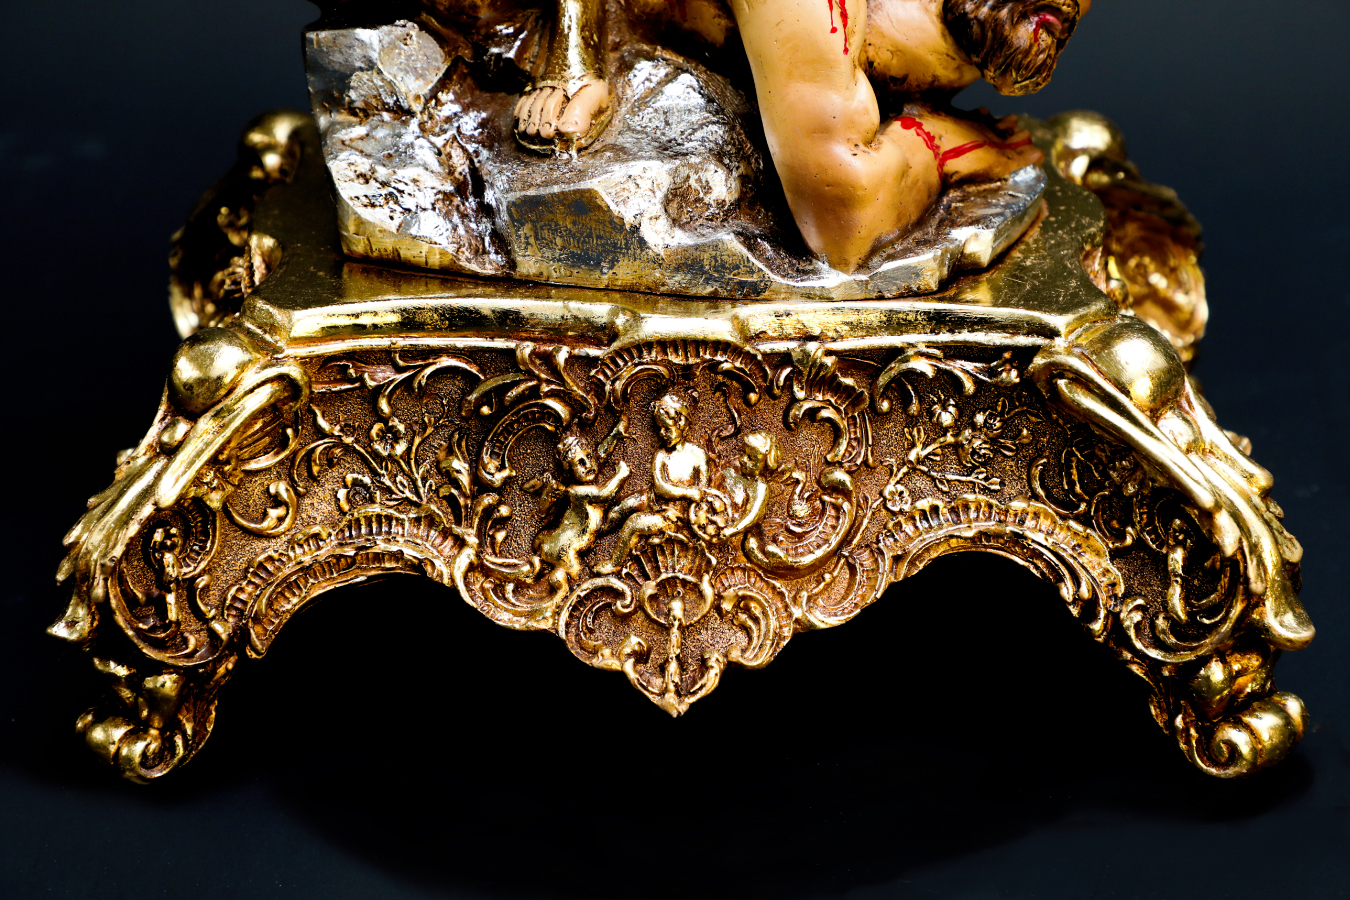 San Miguel arcángel casco clásico sin diablo – Sanso Galería / Saúl Soto